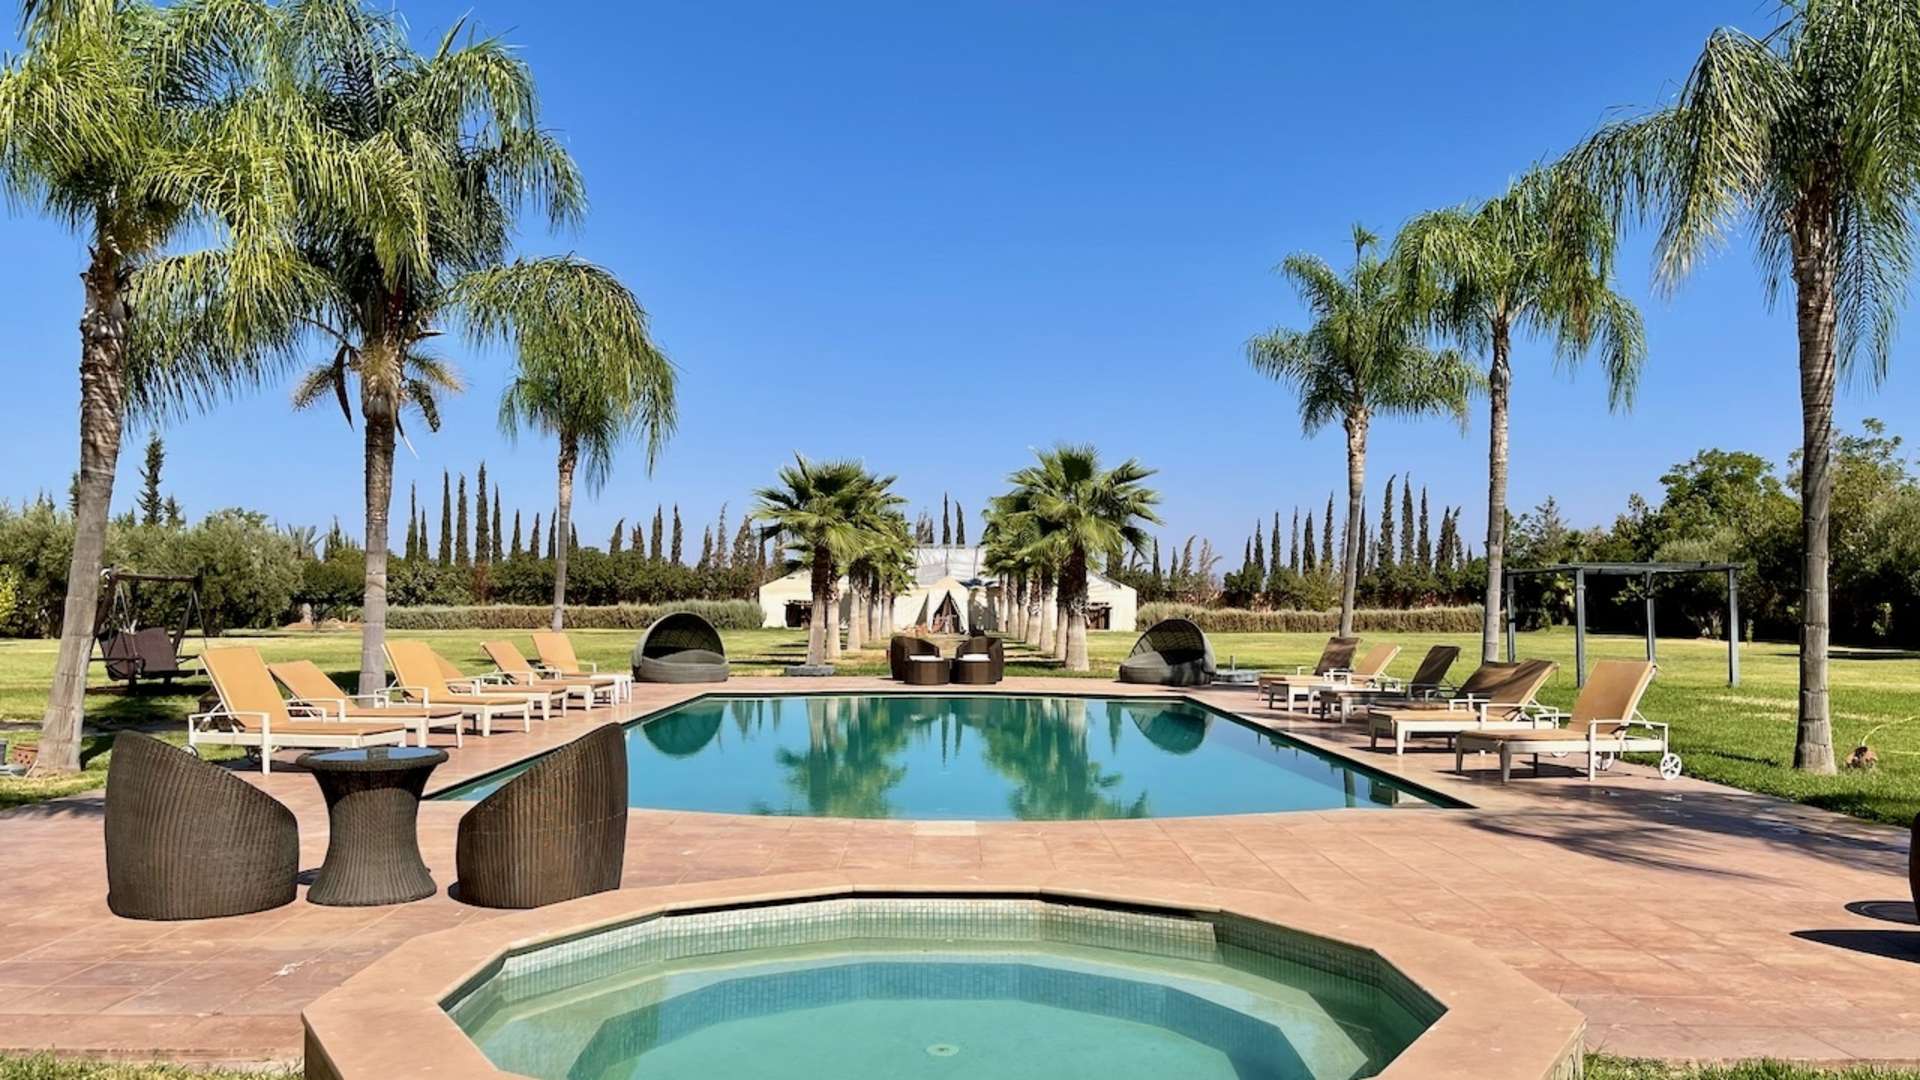 Location de vacances,Villa,Propriété Privée sur 1 Ha avec 3 villas de 5 ch. 2 piscines, Spa, Salle de Sport & Hammam à Marrakech,Marrakech,Route d'Ouarzazate